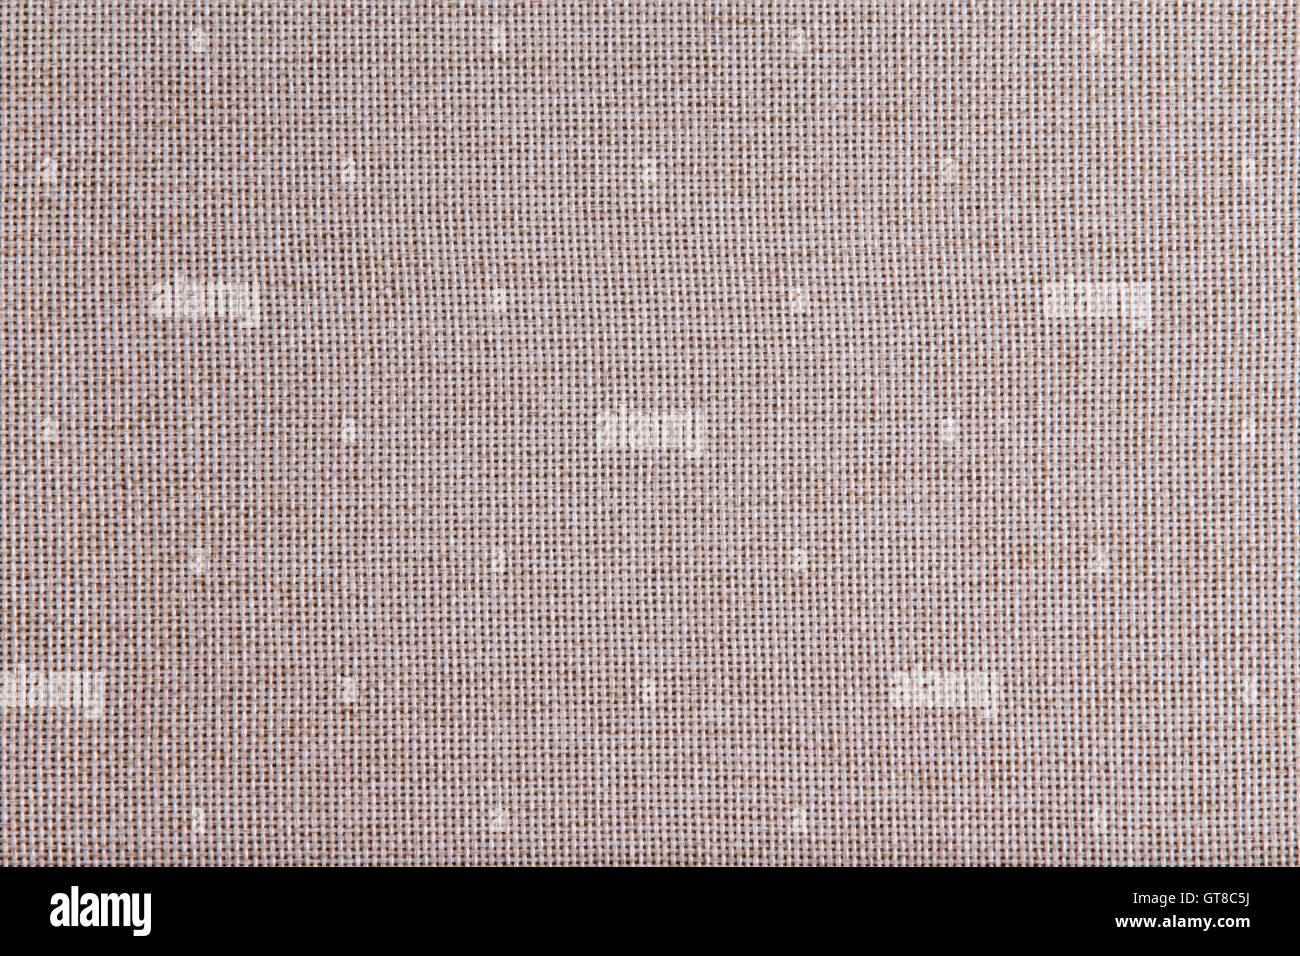 La texture de fond tissé grossier tissu beige avec un tissu à mailles ouvertes de fibres naturelles dans une vue plein cadre Banque D'Images